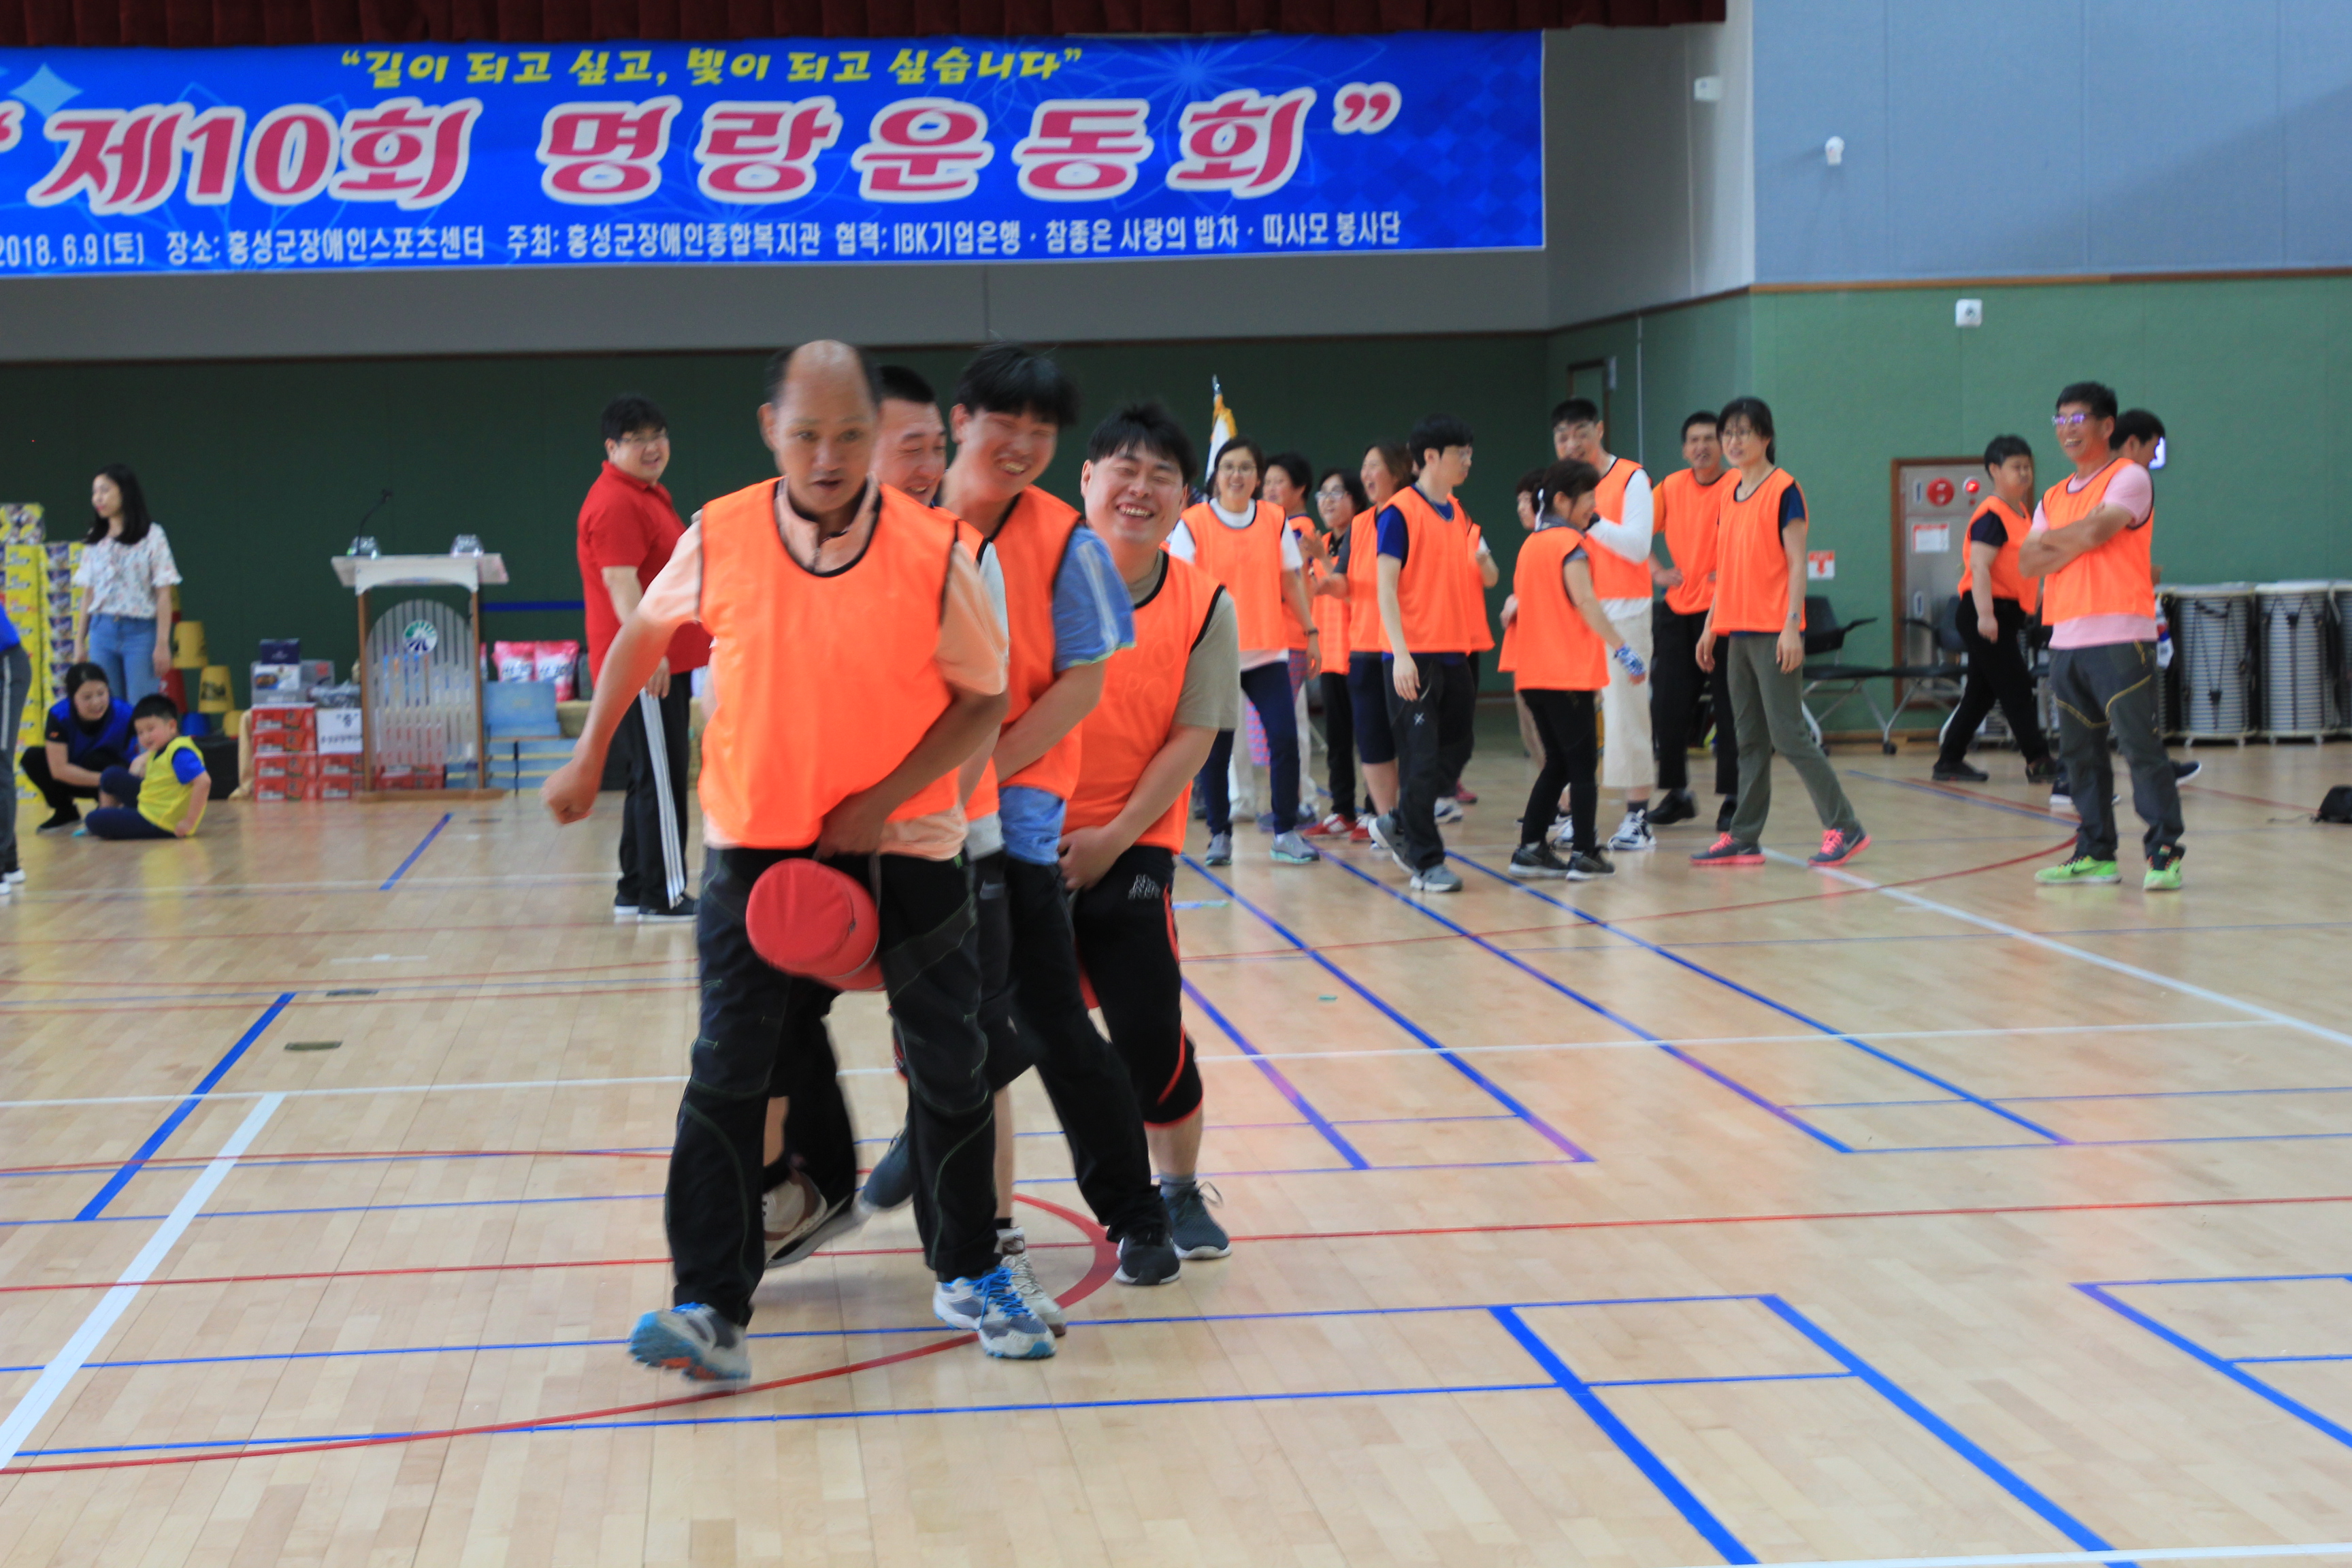 단체경기를 즐겁게 참여하고있는 주황색 팀의 모습